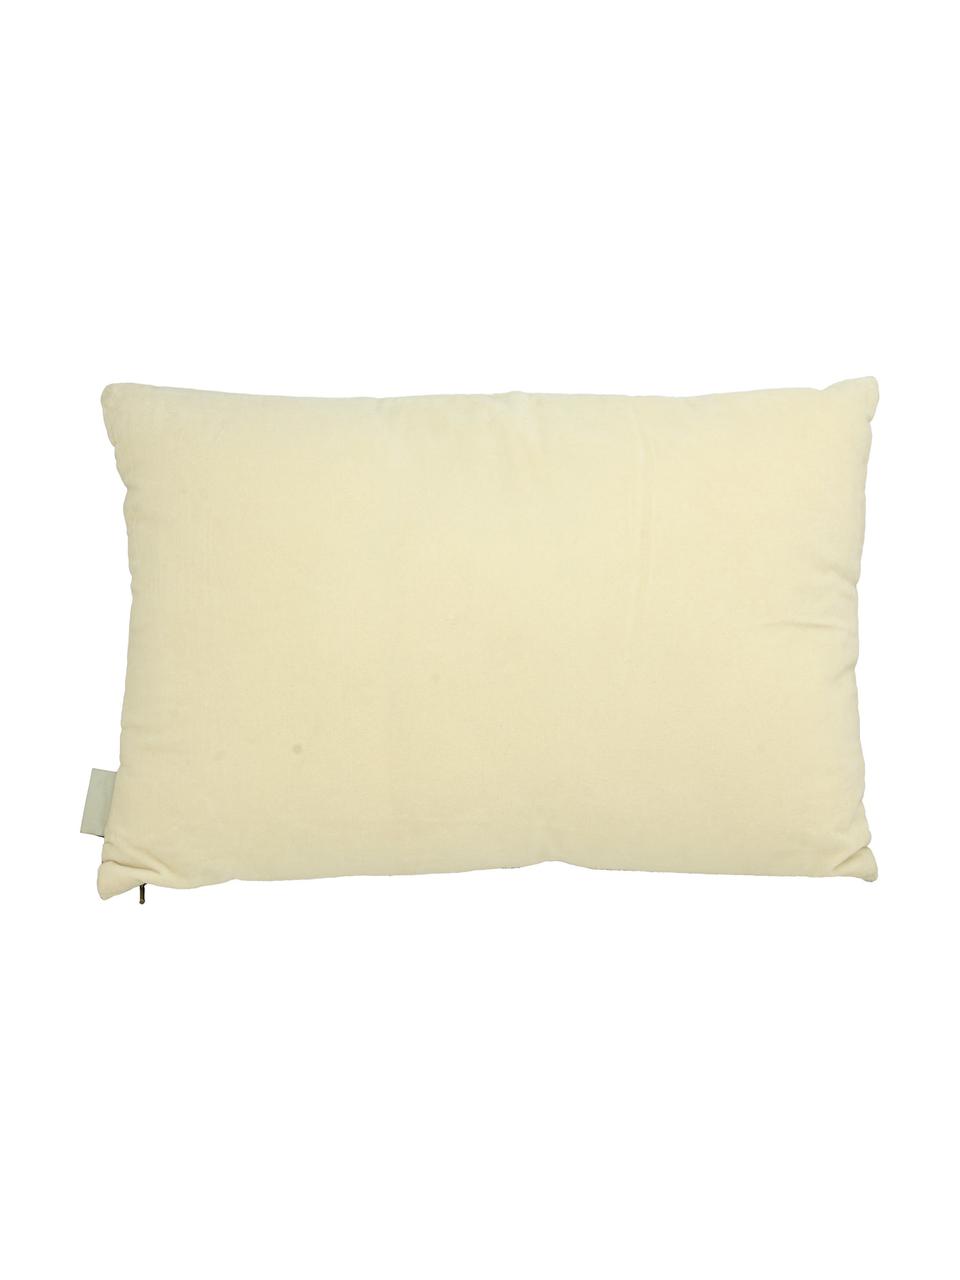 Cuscino in velluto Poppy, Rivestimento: velluto di cotone, Beige, tonalità grigie, Larg. 40 x Lung. 60 cm